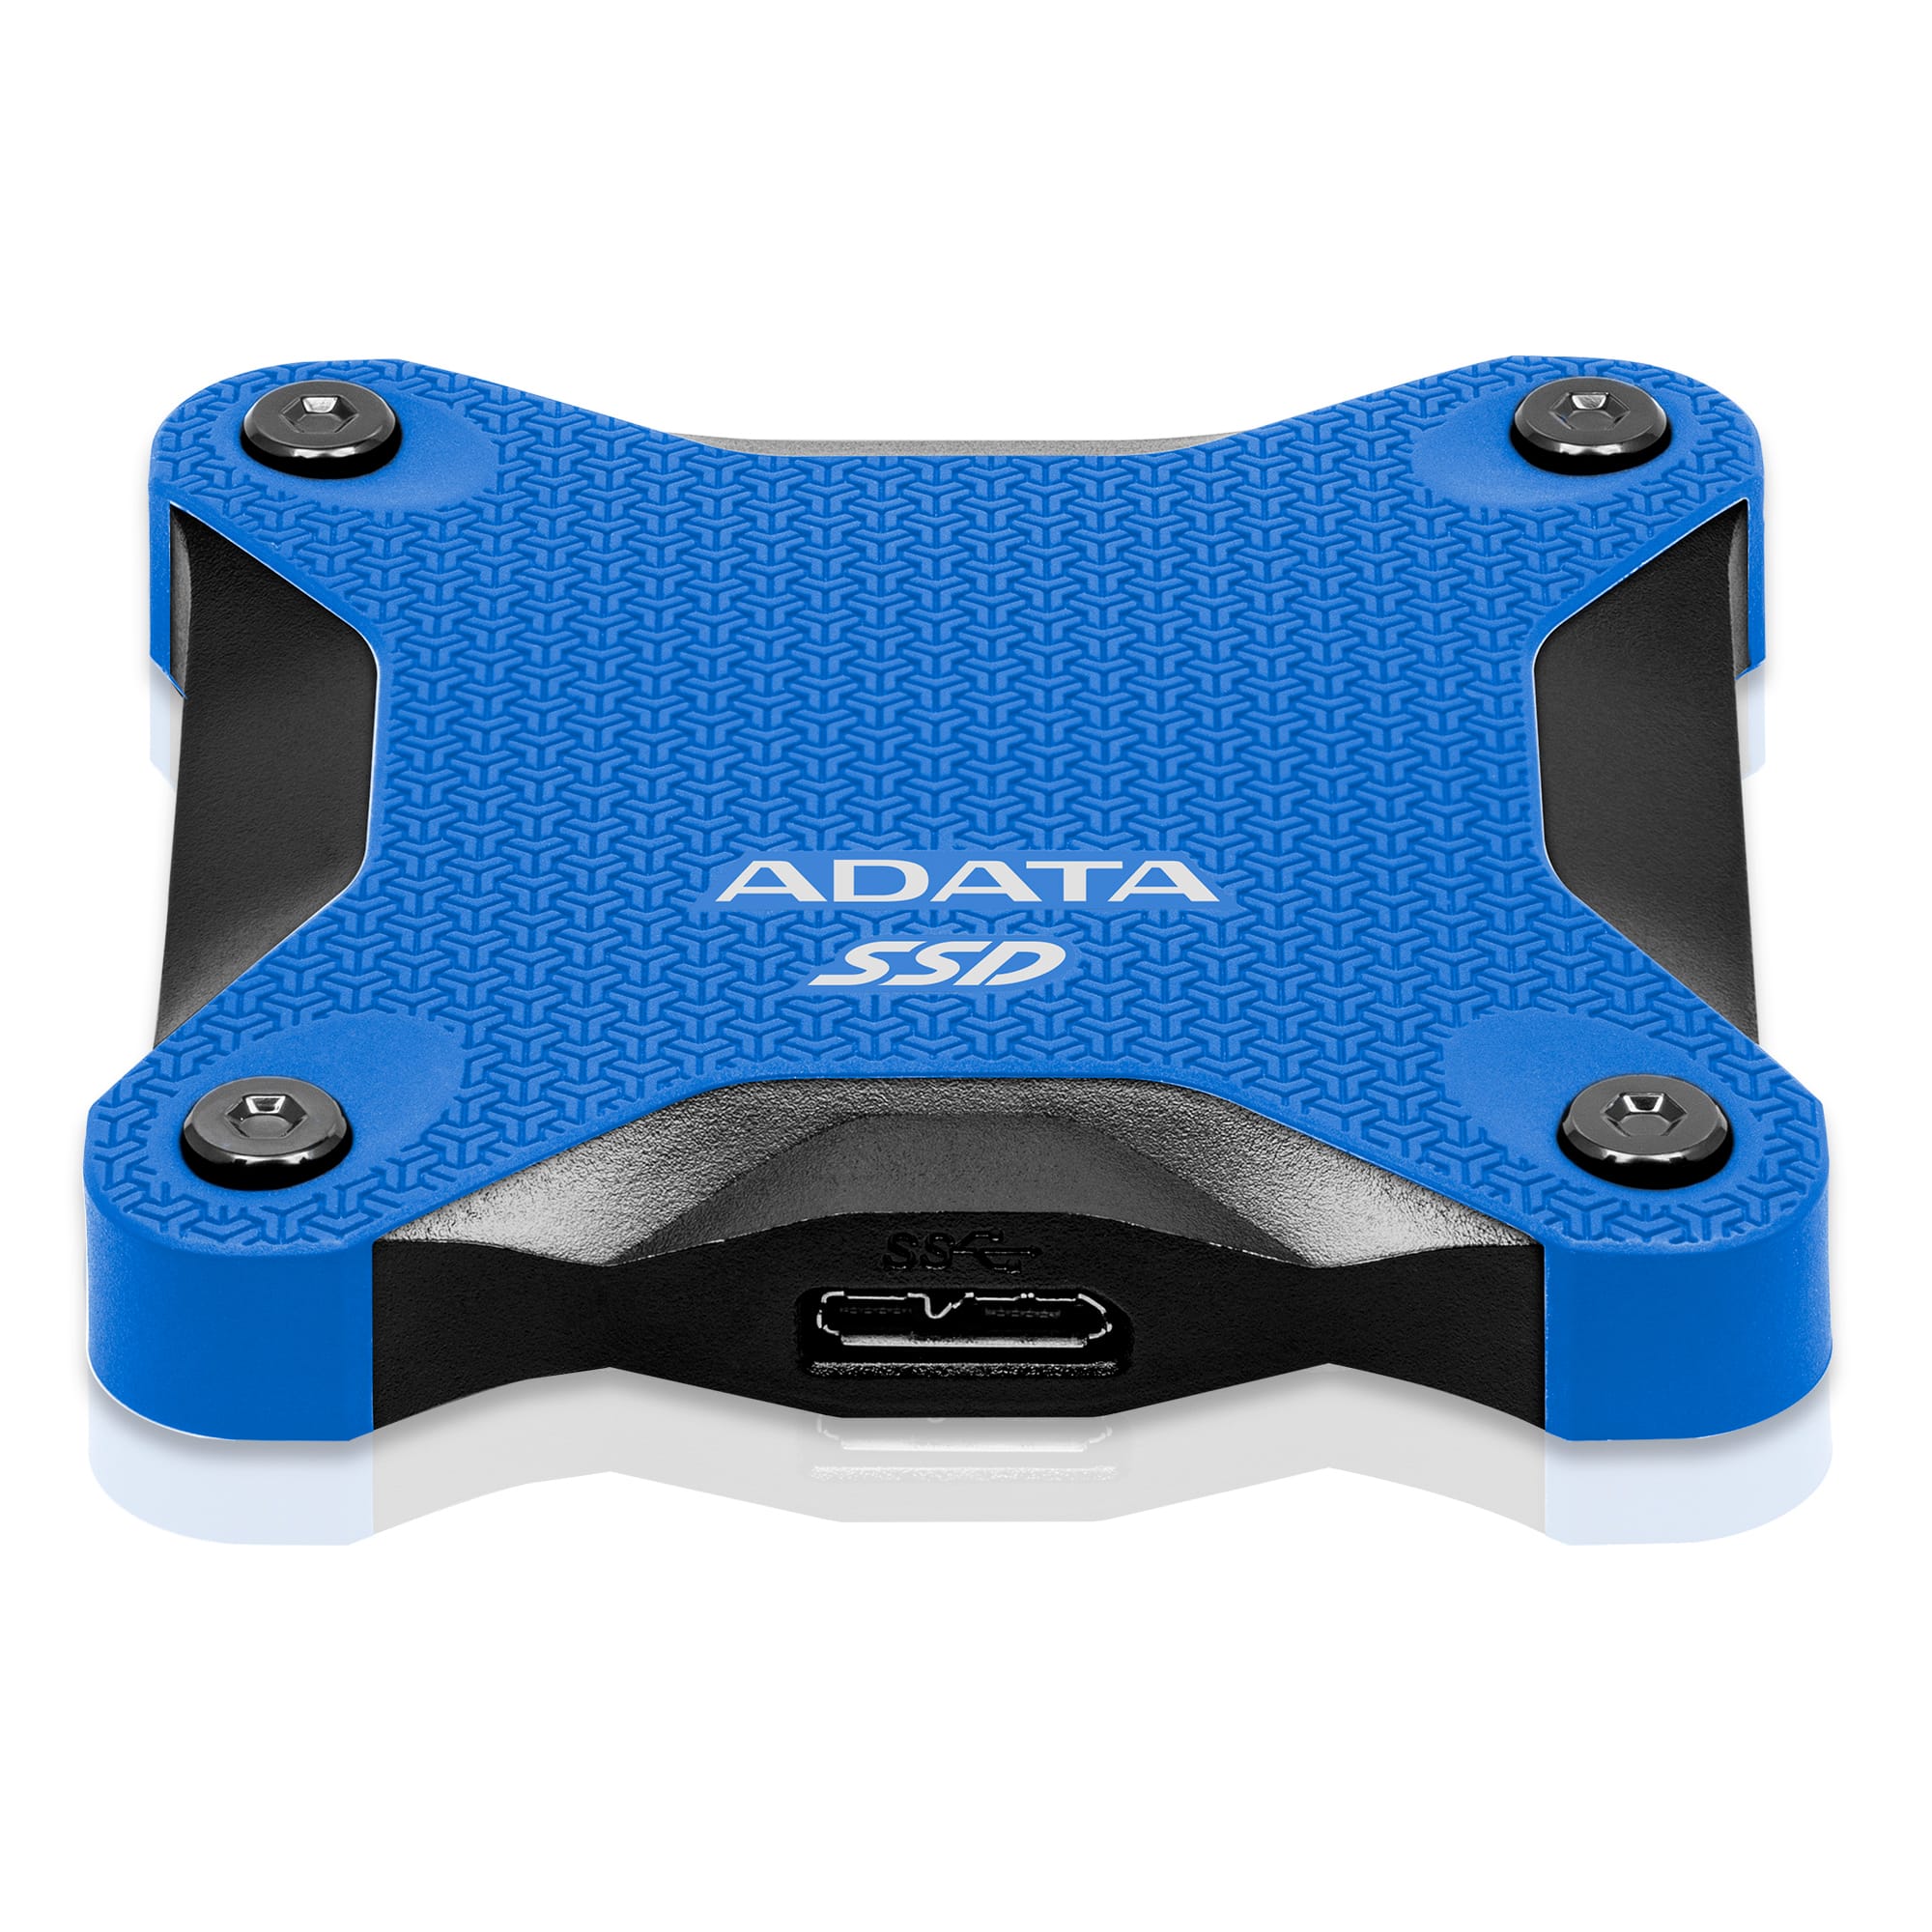 ADATA SSD SD600Q, 480GB, USB 3.2 - rýchlosť 440/430 MB/s (ASD600Q-480GU31-CBL) externý pevný disk, modrá